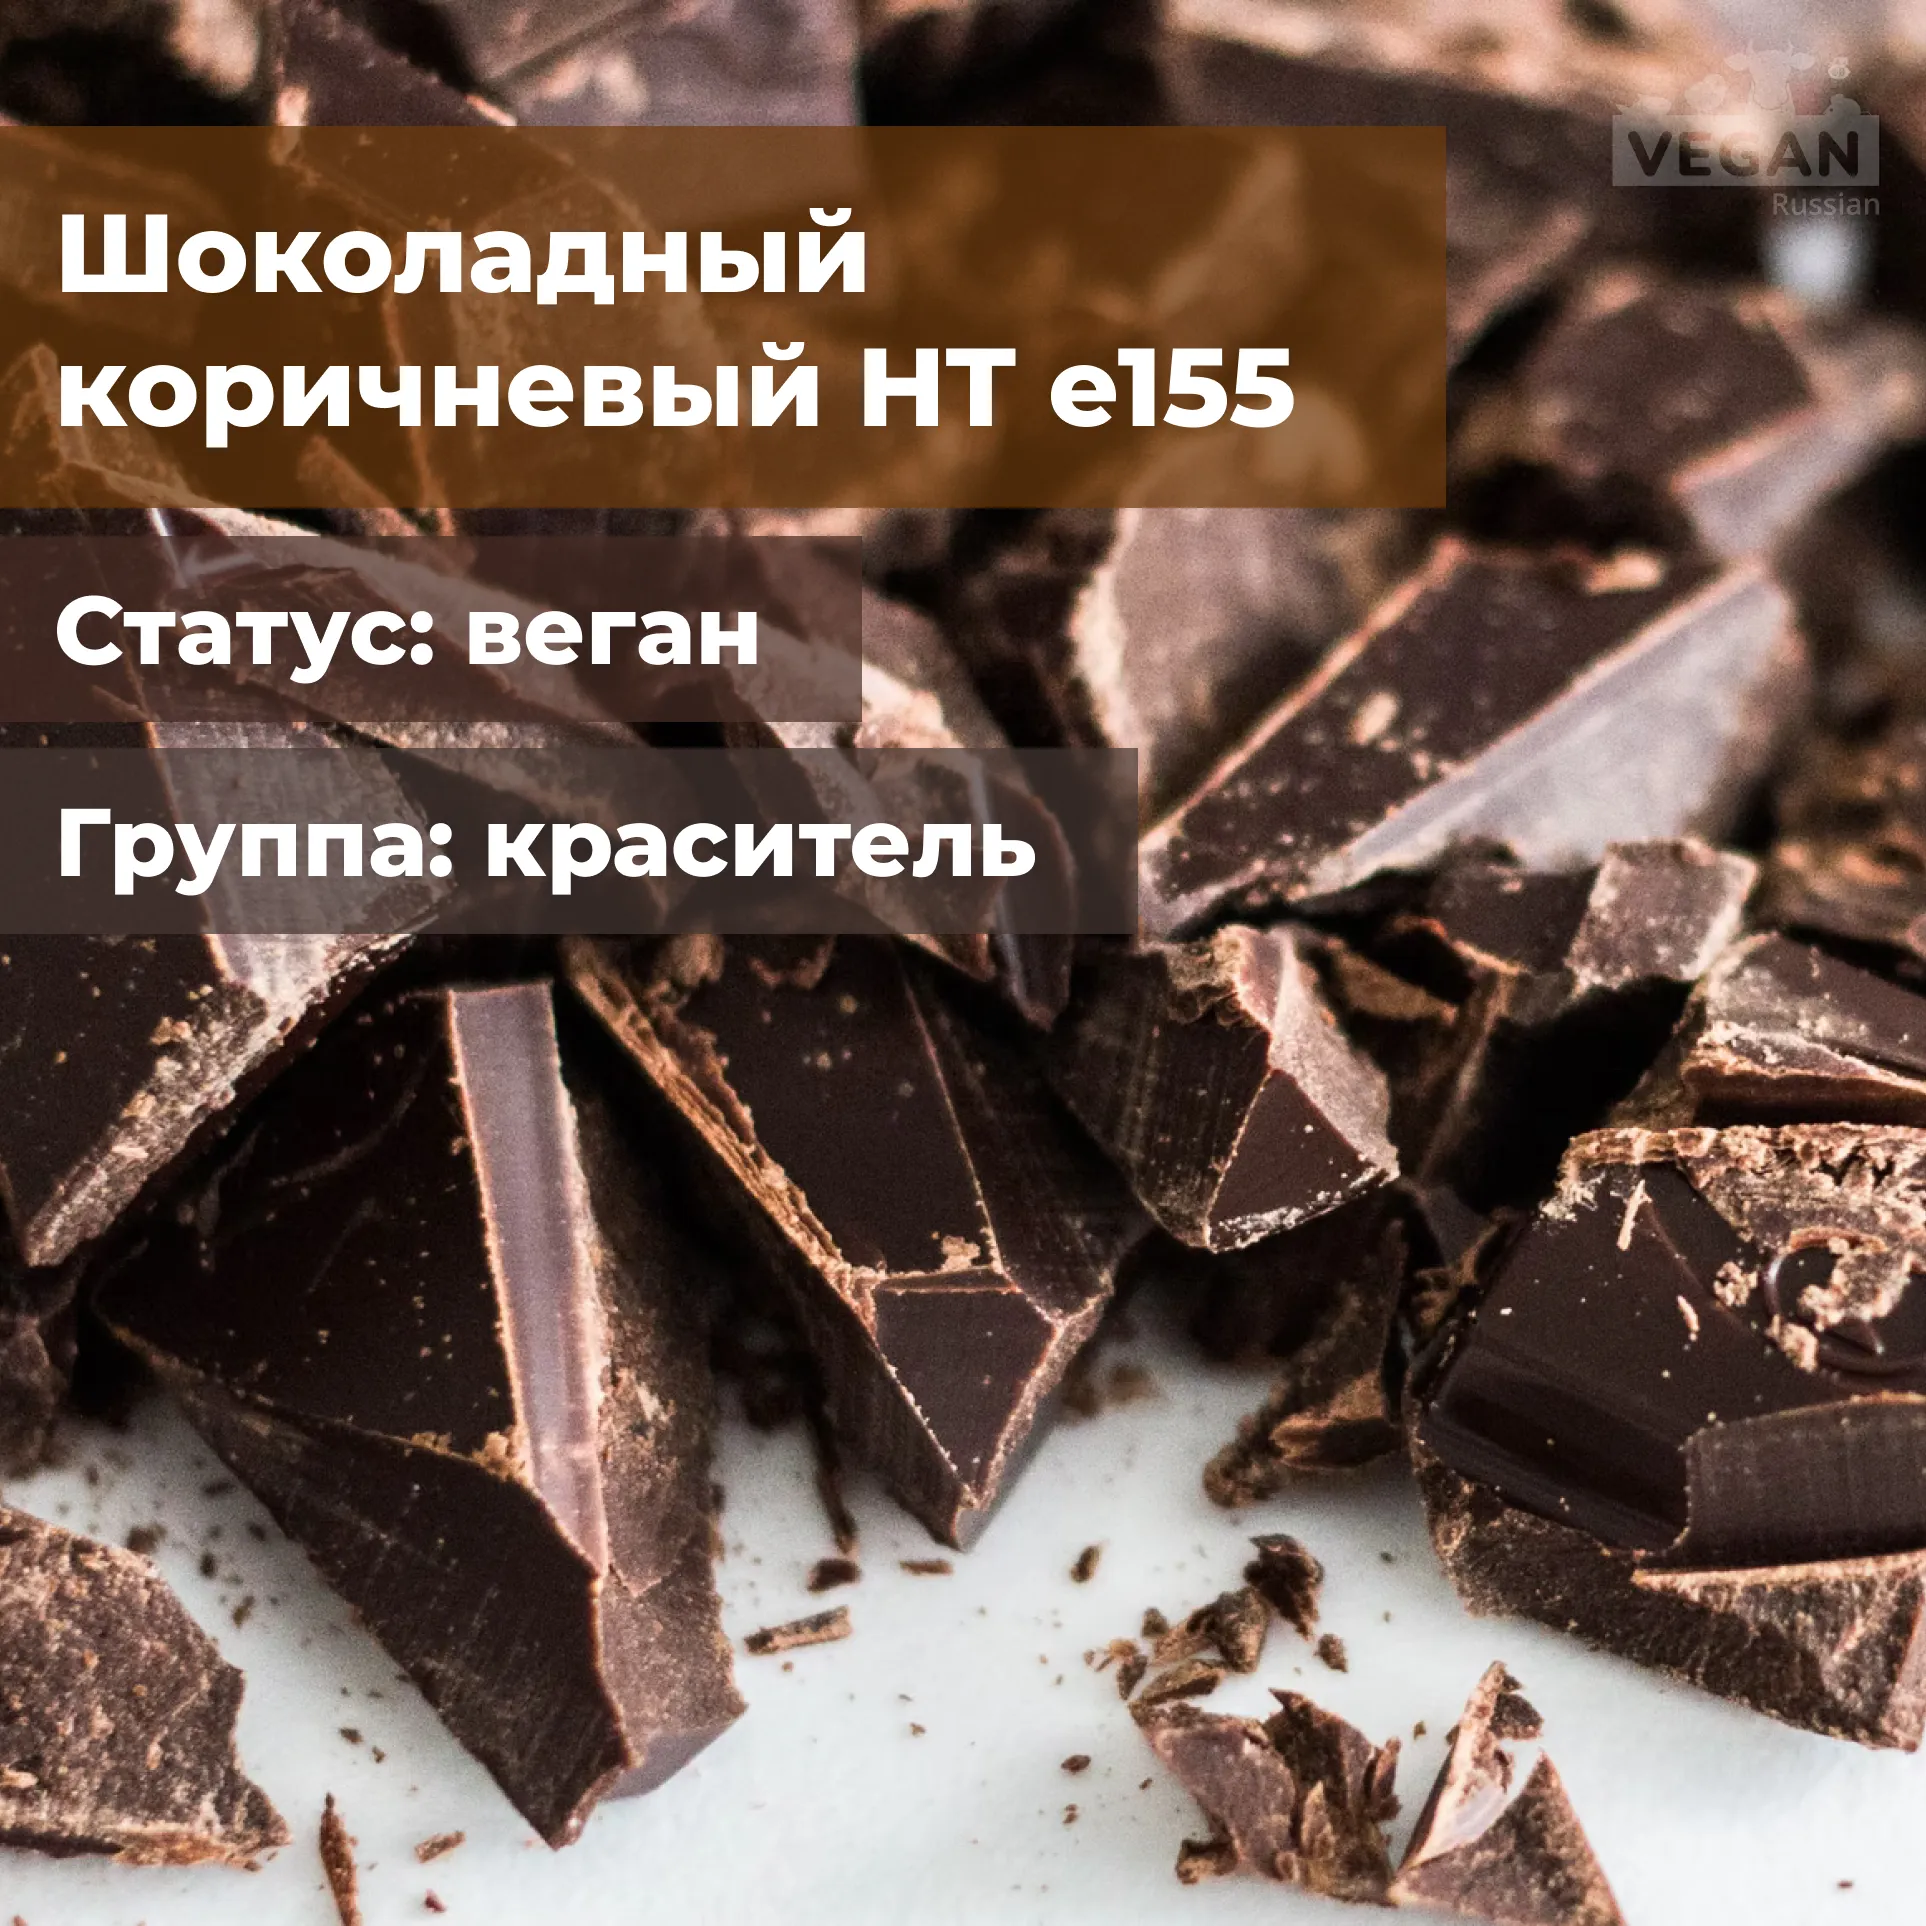 Шоколадный коричневый HT е155